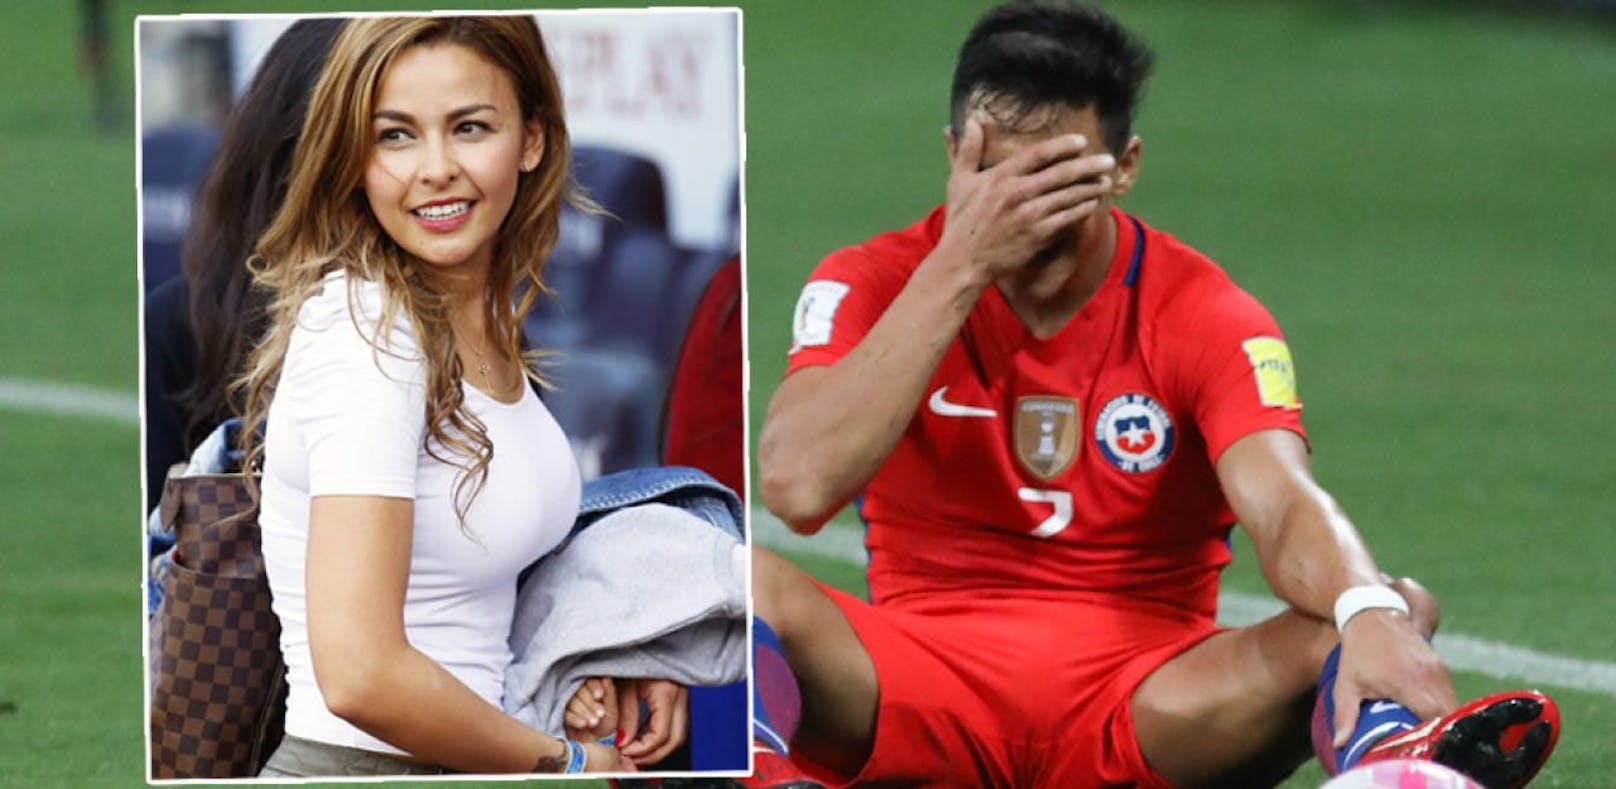 Spielerfrau deckt auf: Chile zu besoffen für WM?